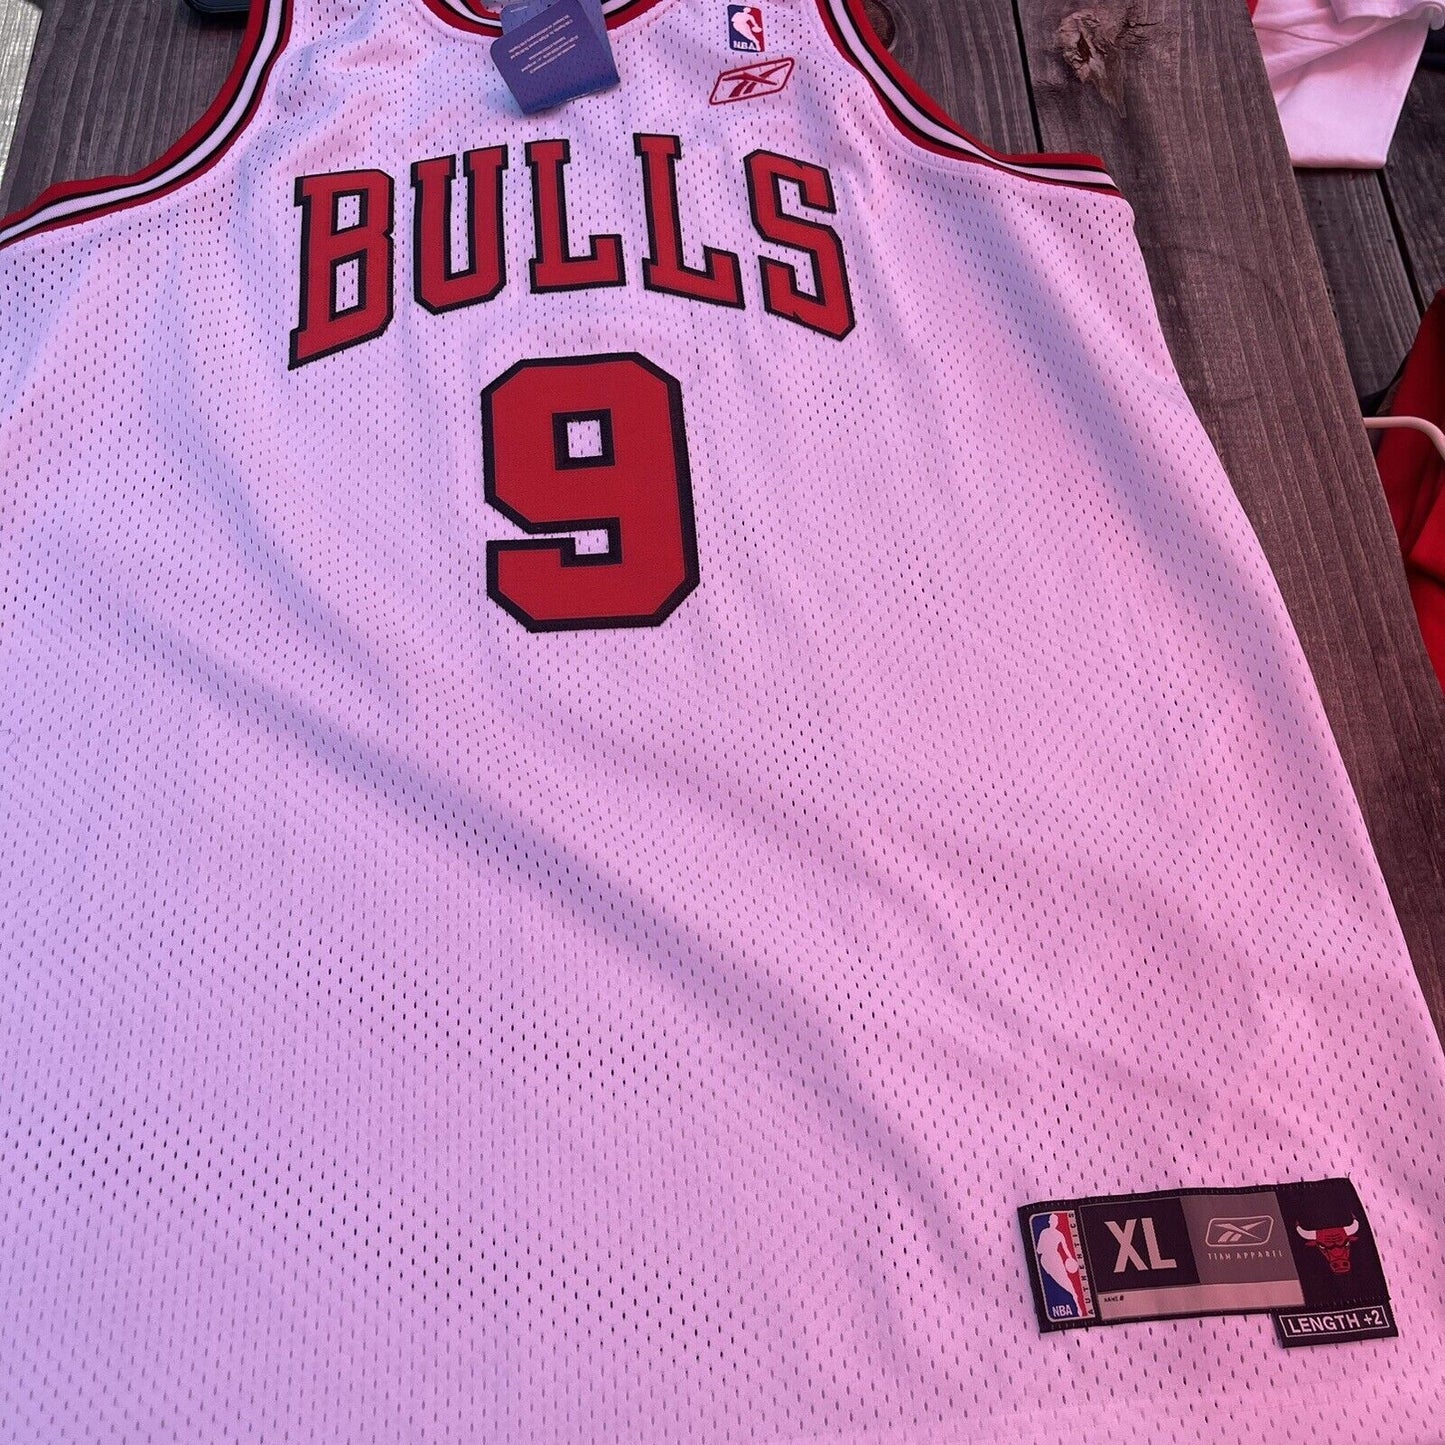 Luol Deng Reebok NBA Basketball Jersey Mens Xl Chicago Bulls